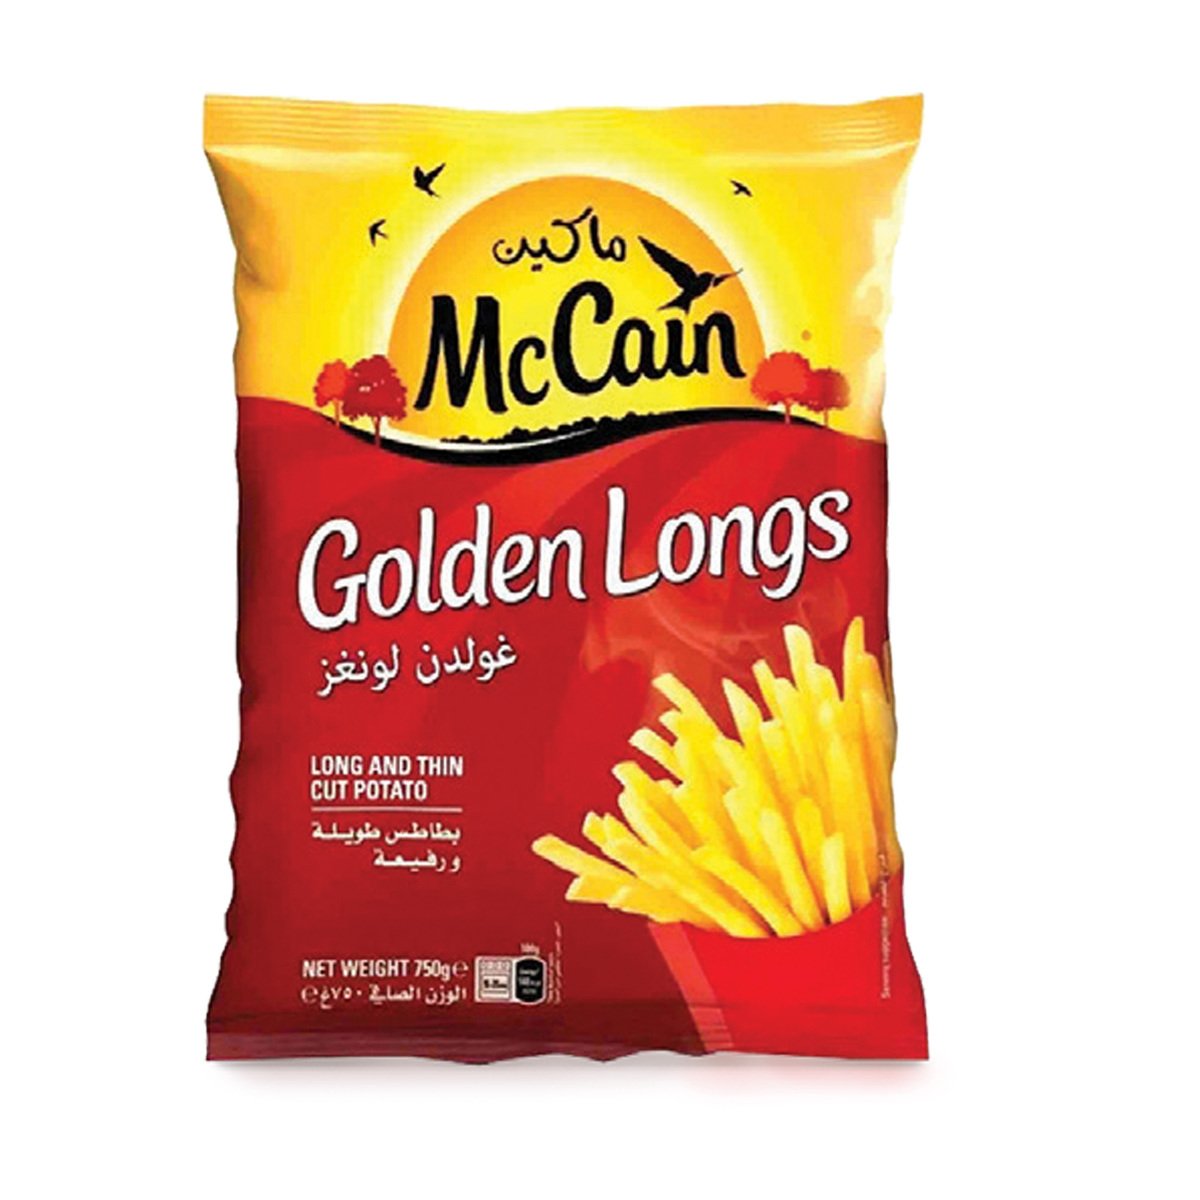 McCain Golden Long French Fries 1.5kg